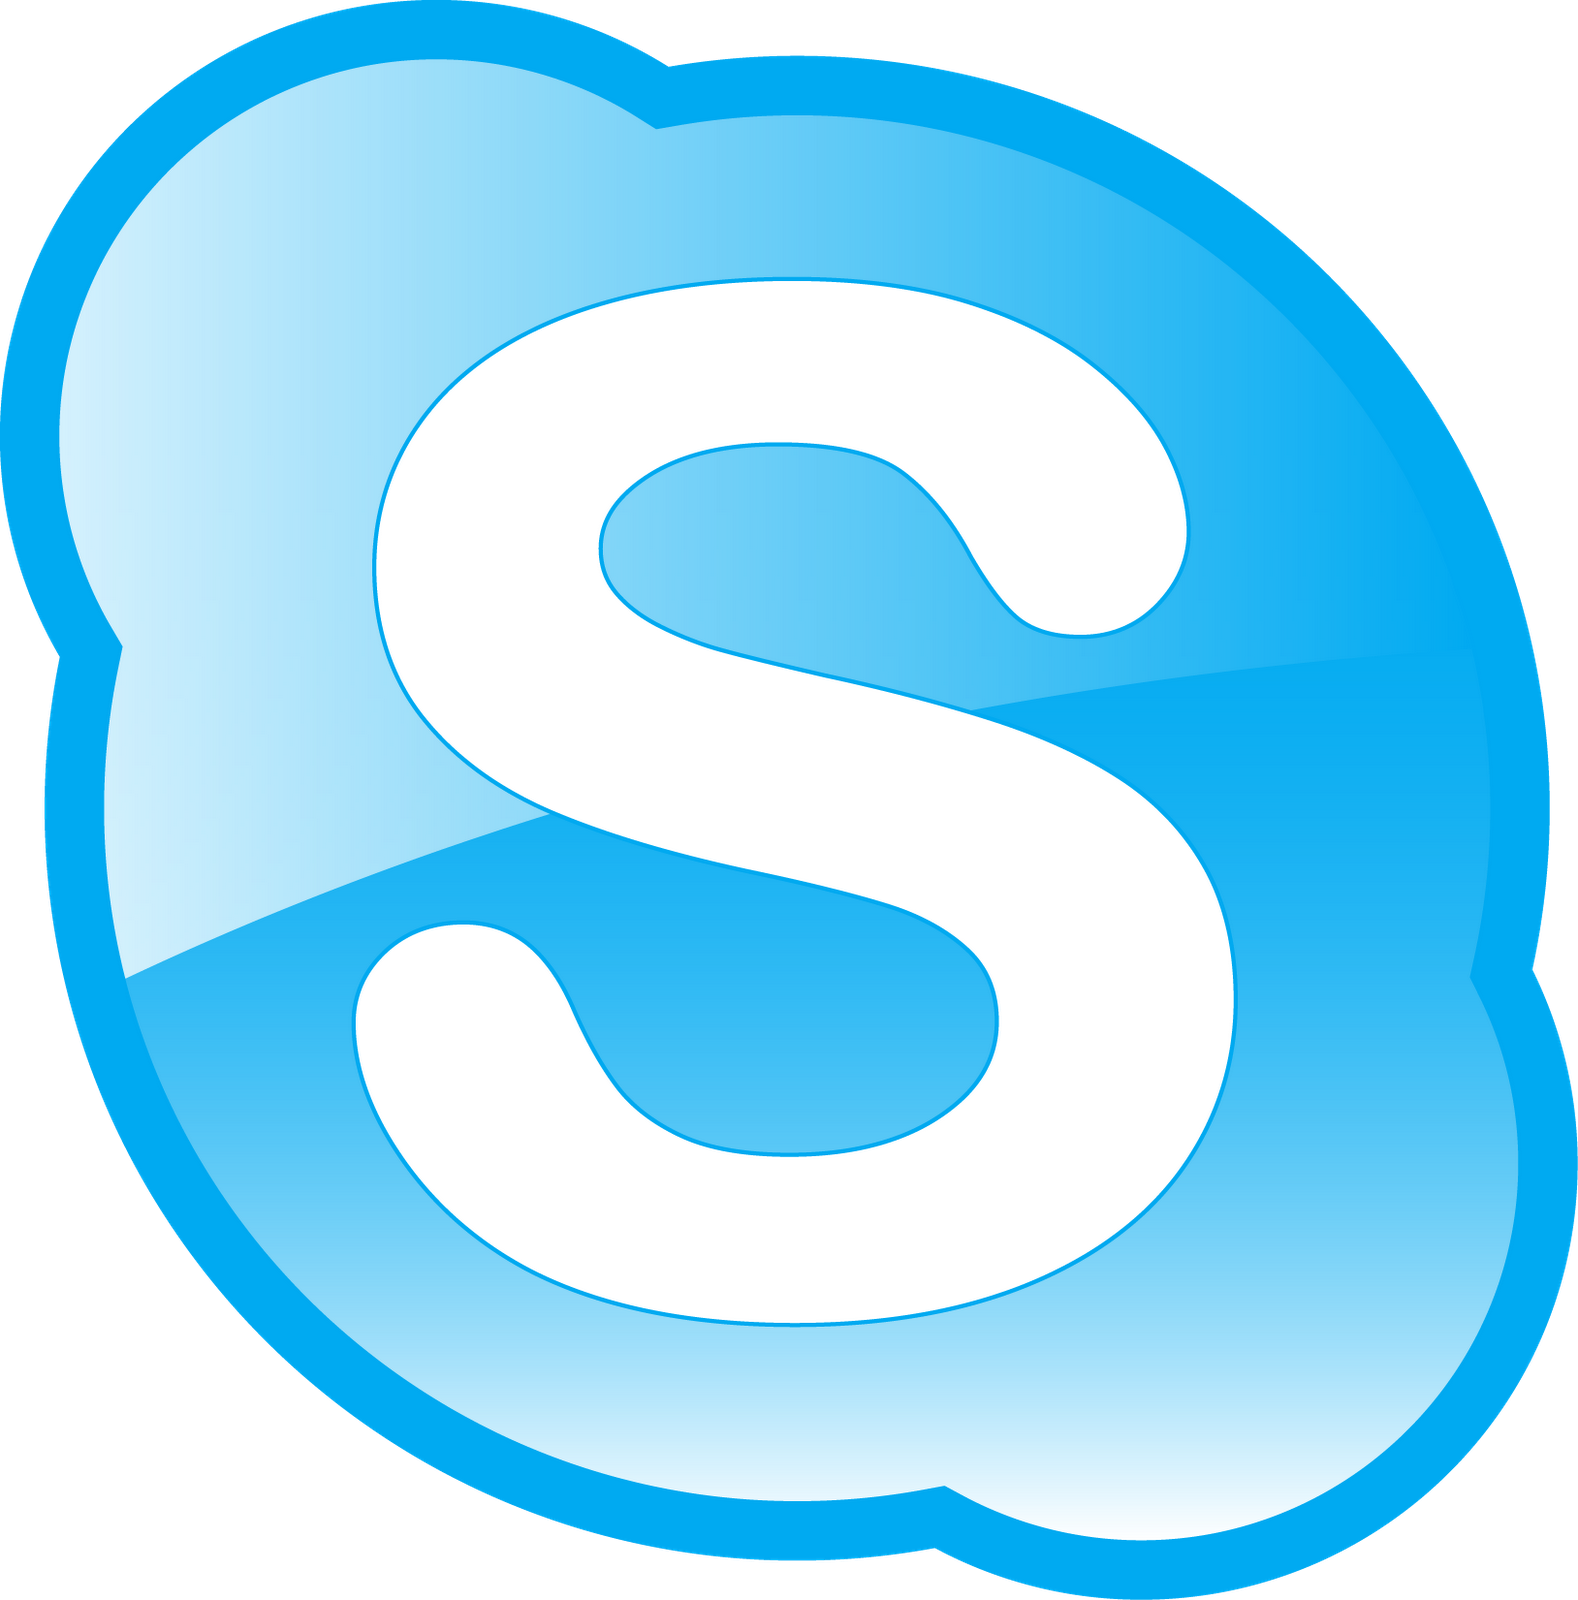 Skype logosu